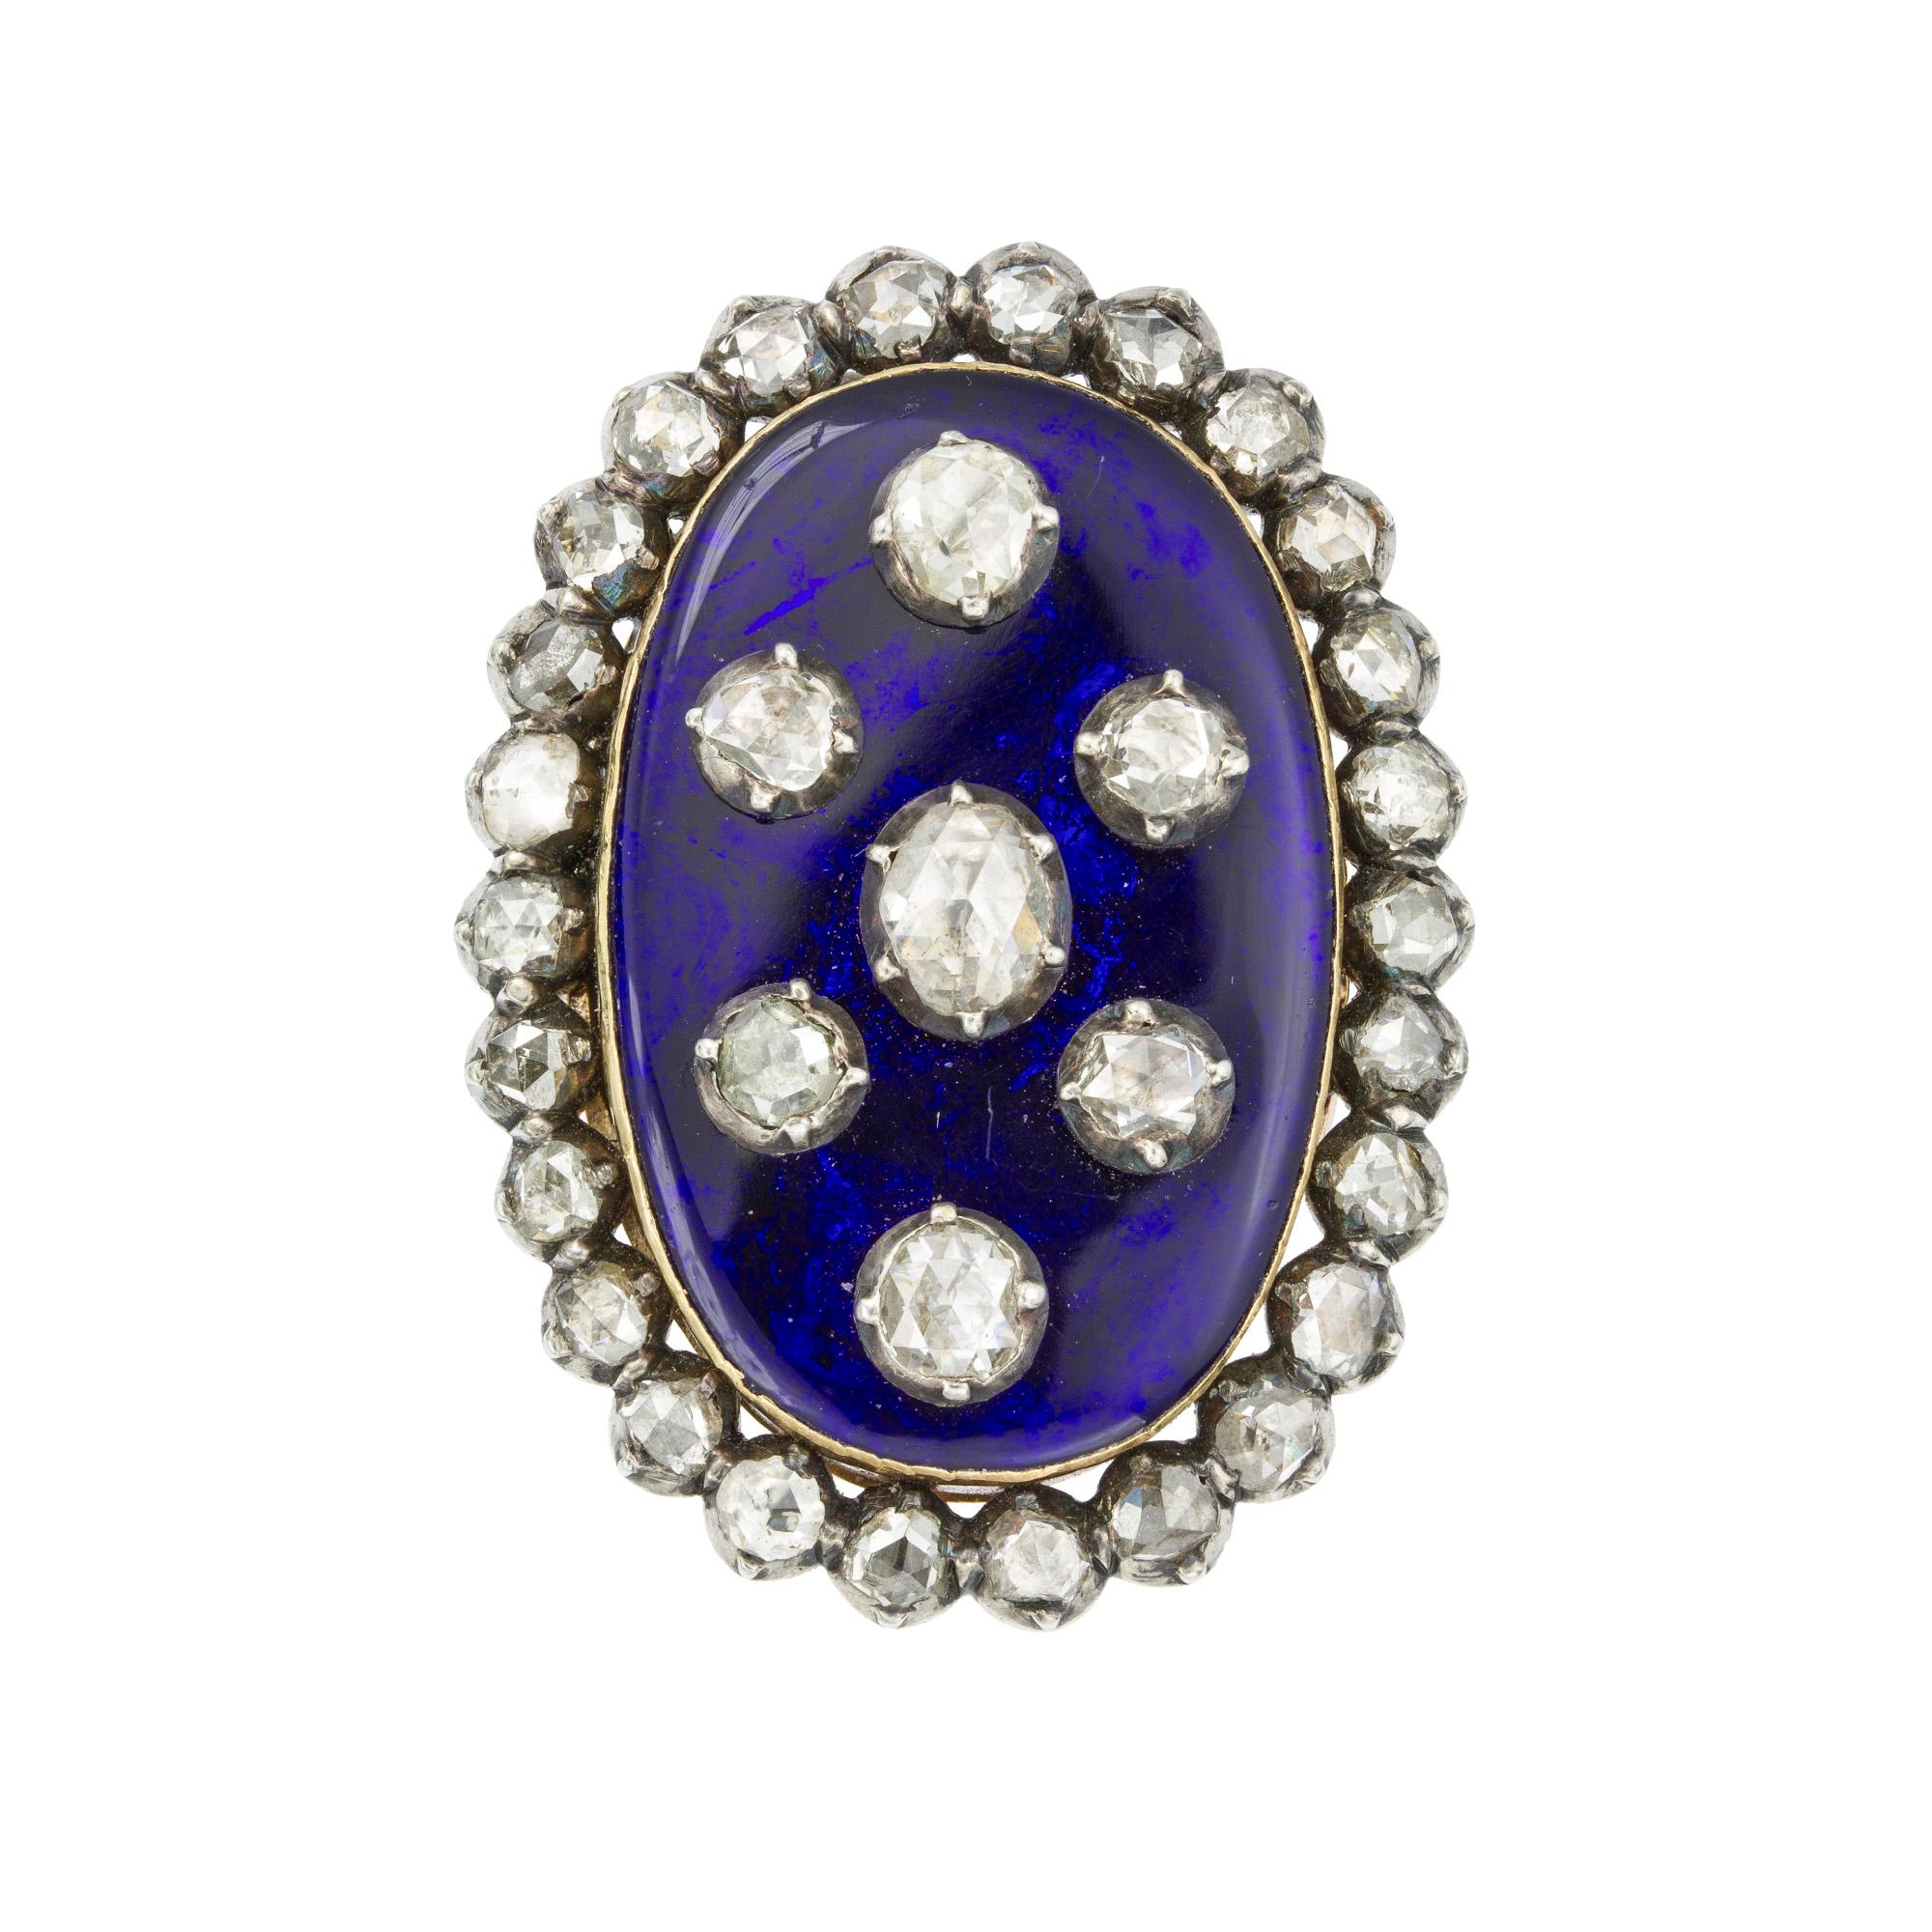 Ein georgianischer Ring aus blauer Emaille und Diamanten, dessen ovale blaue Emaille in der Mitte mit einem ovalen Diamanten im Rosenschliff besetzt ist, umgeben von sechs runden Diamanten im Rosenschliff  alle Diamanten geschliffenes Silber, auf